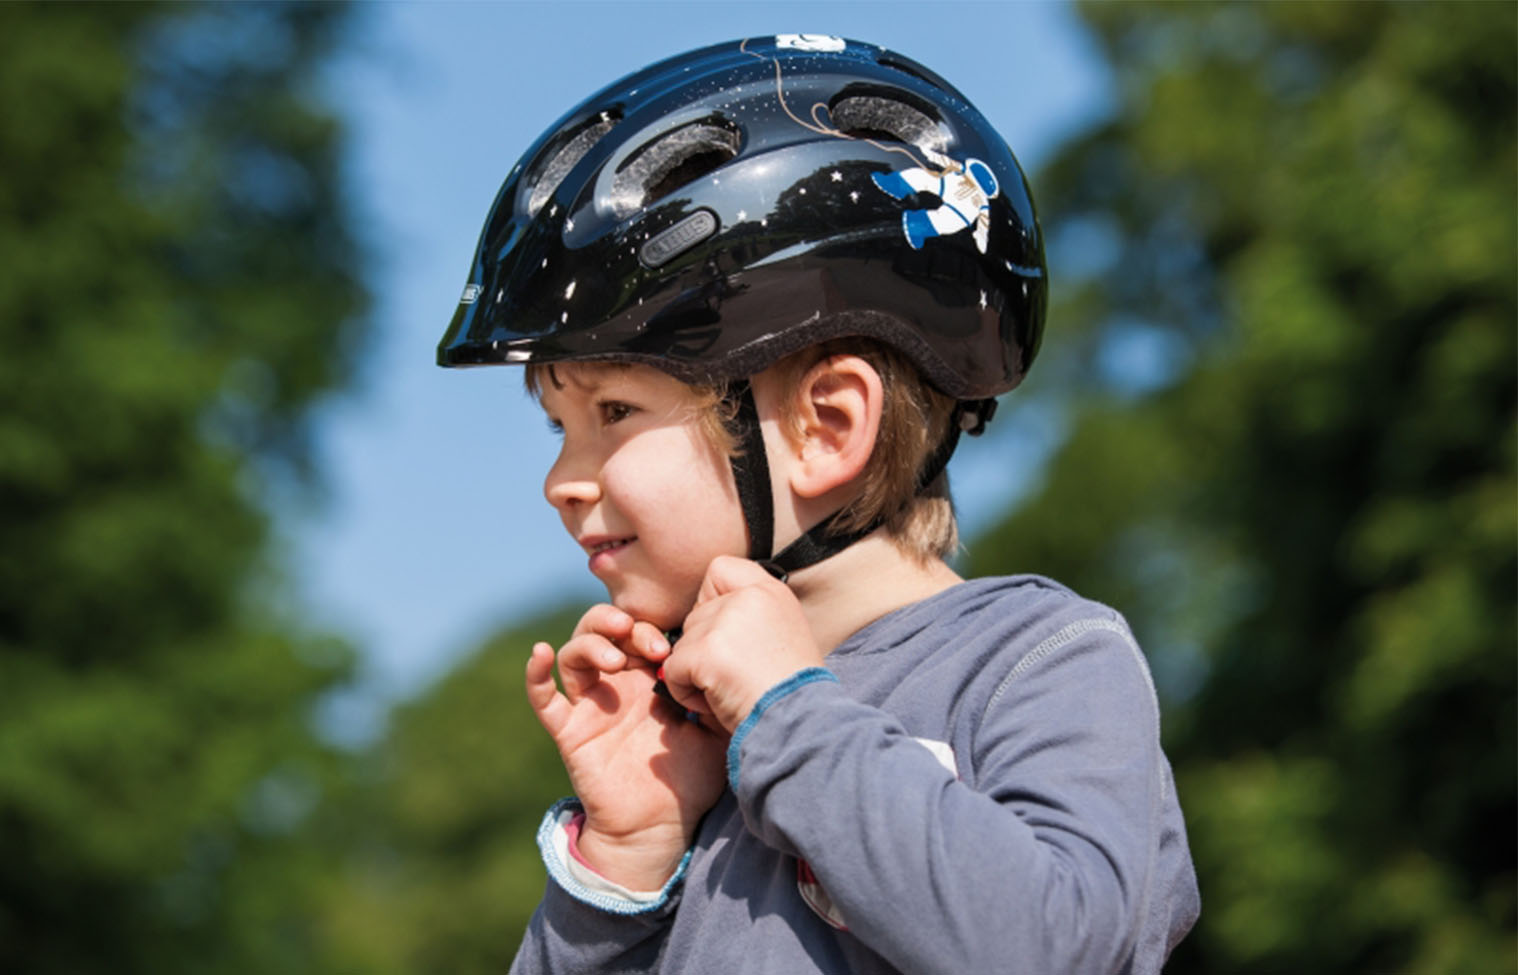 Ein Fahrradhelm muss dem Kind richtig passen und es muss wissen, wie es den Helm richtig aufsetzt und schließt.